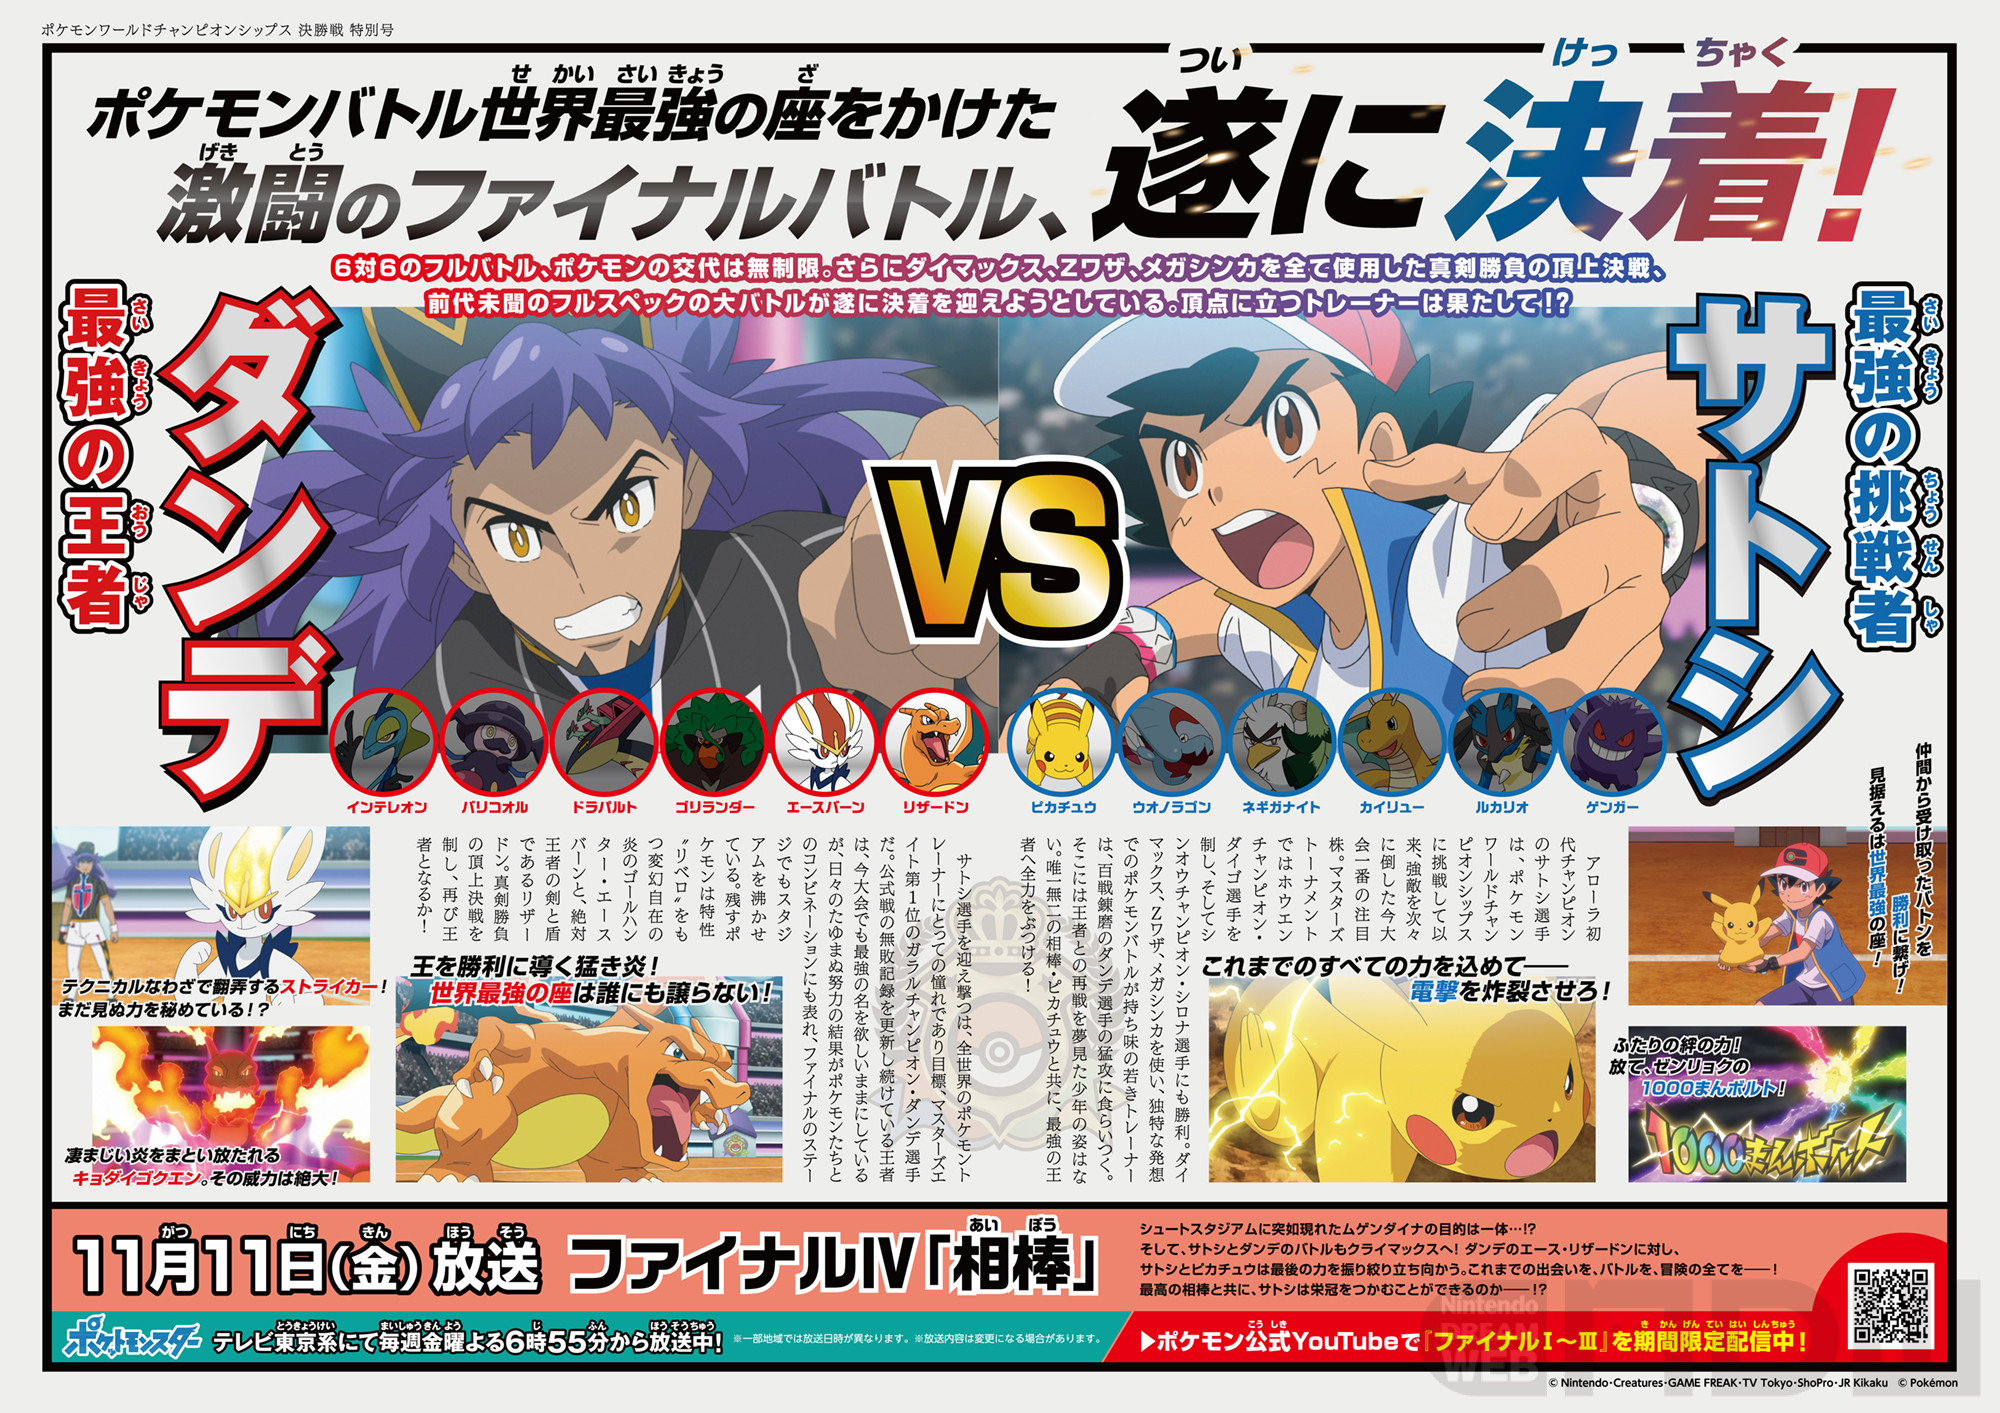 テレビアニメ ポケットモンスター 激闘のファイナルバトルが11月11日 金 ついに決着 Nintendo Dream Web